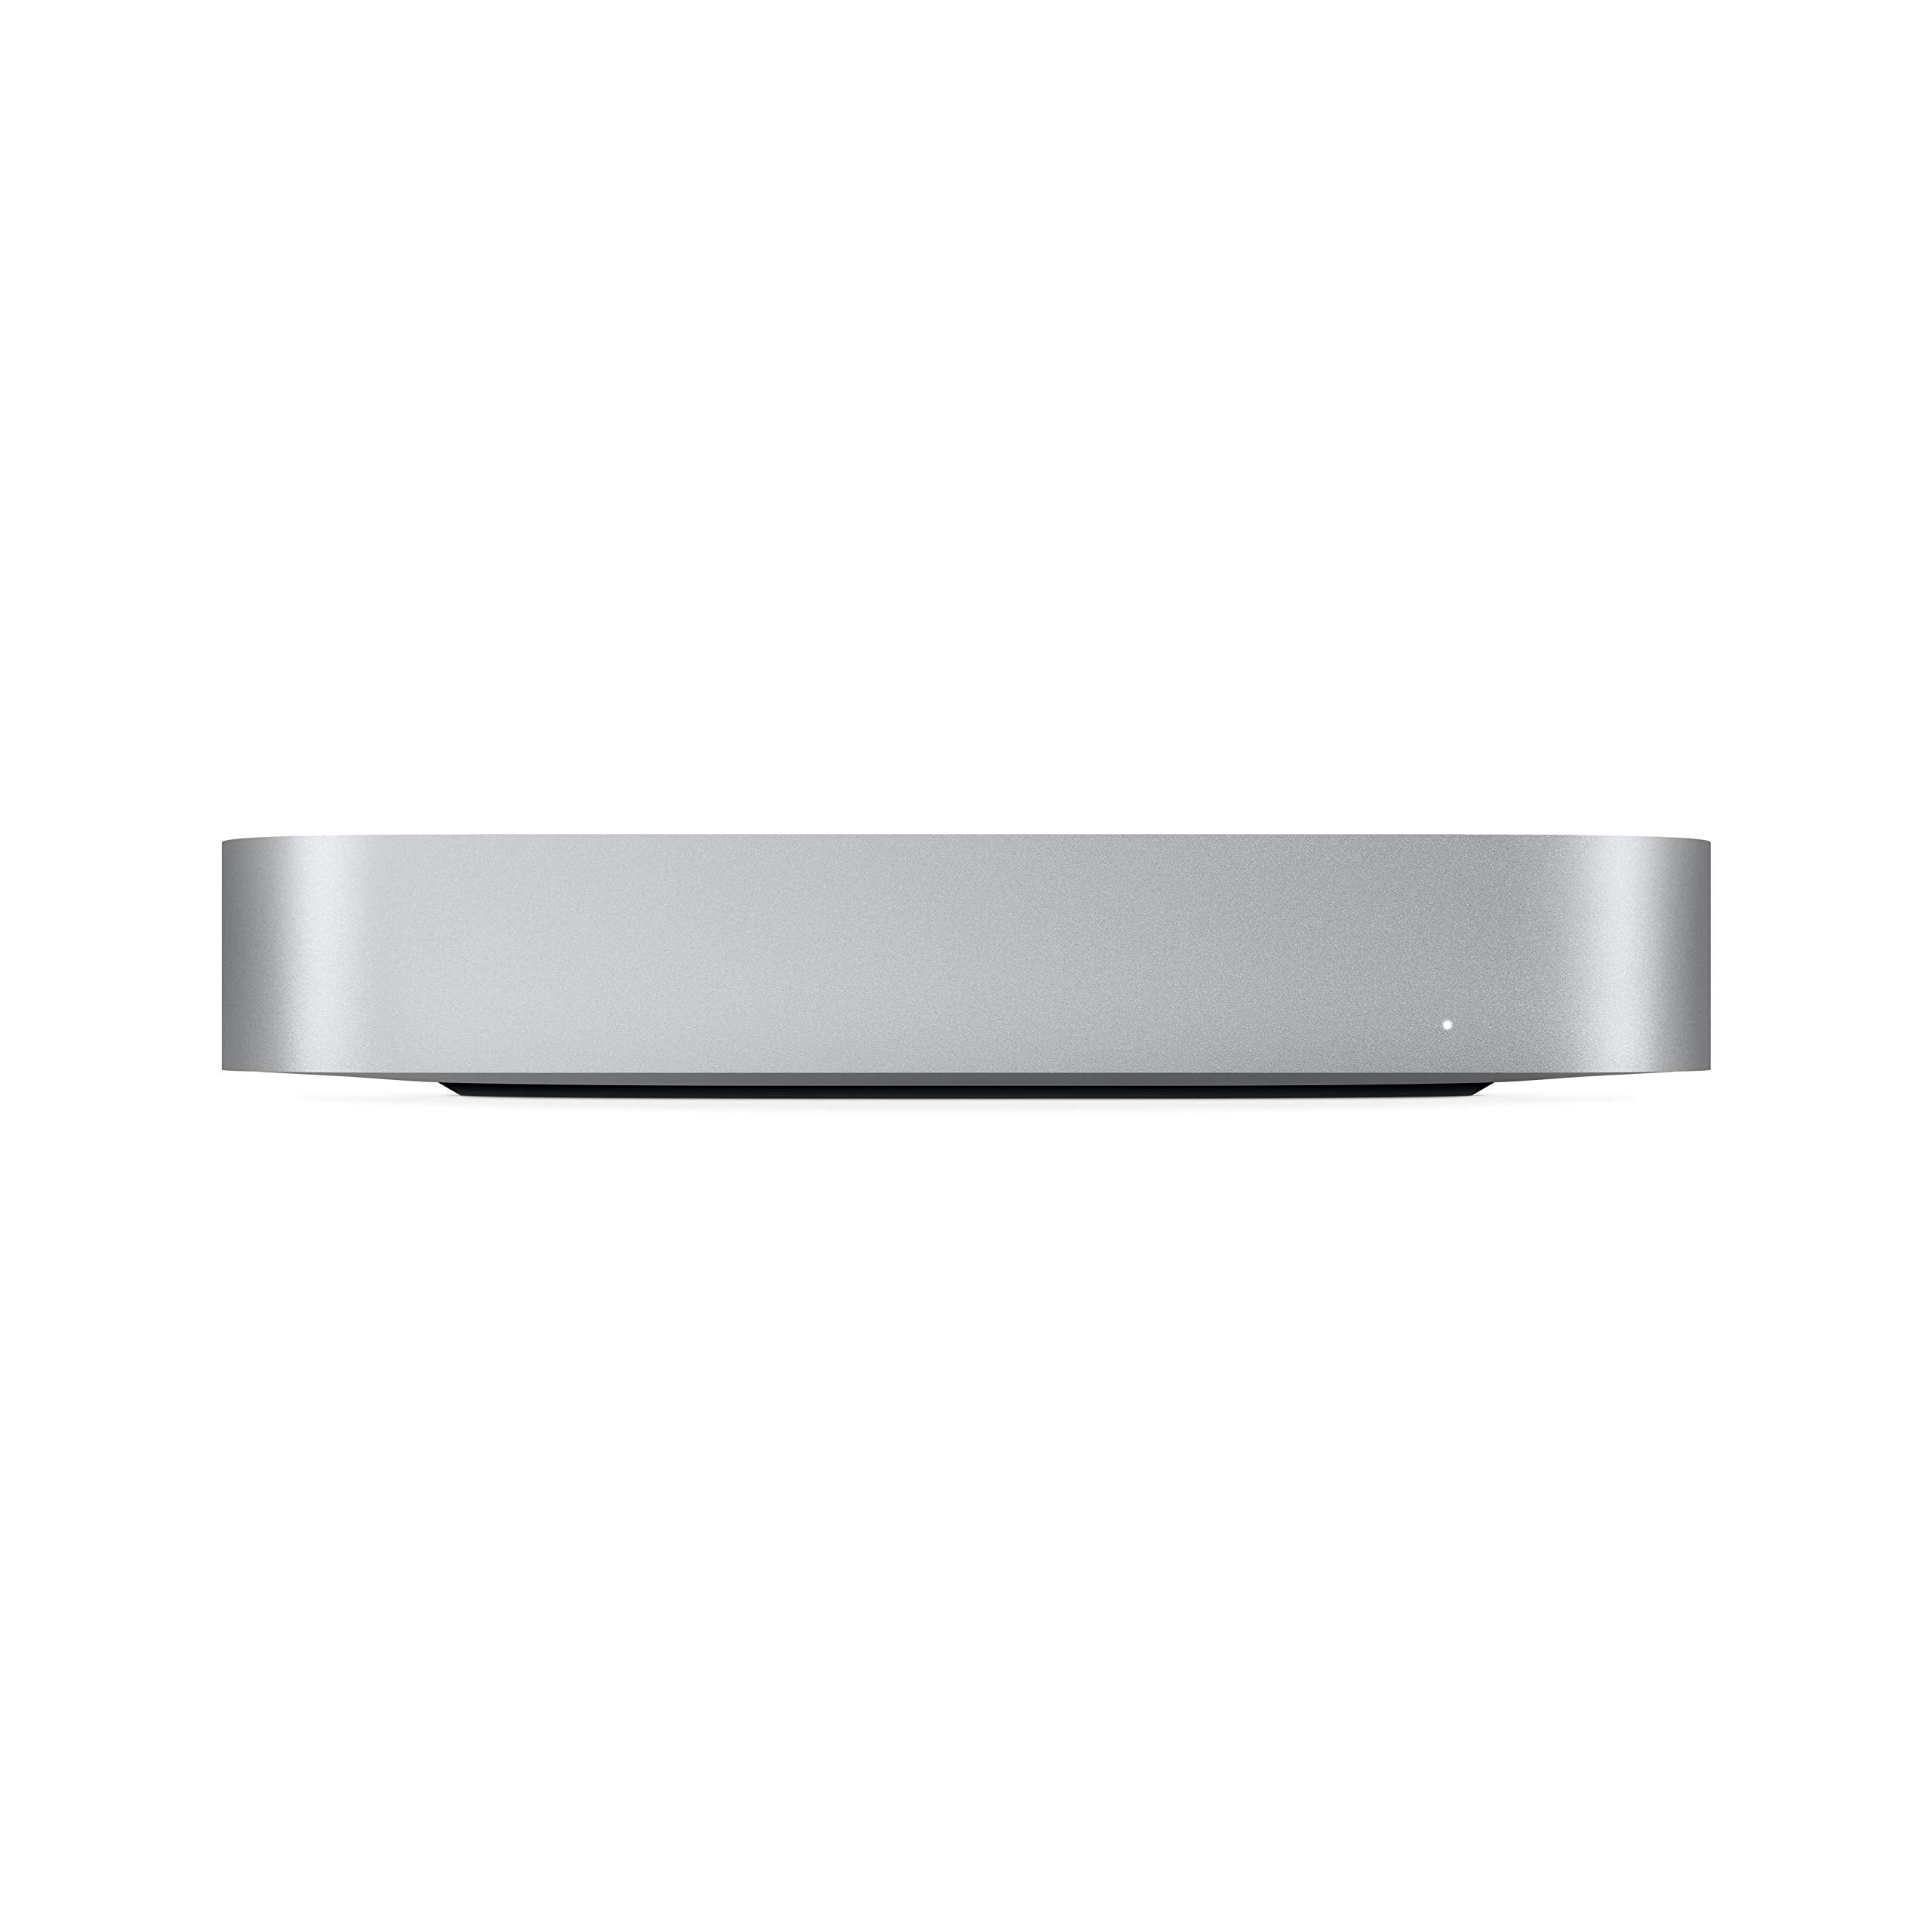 2020 Apple Mac mini with Apple M1 Chip (8GB RAM, 256GB SSD)